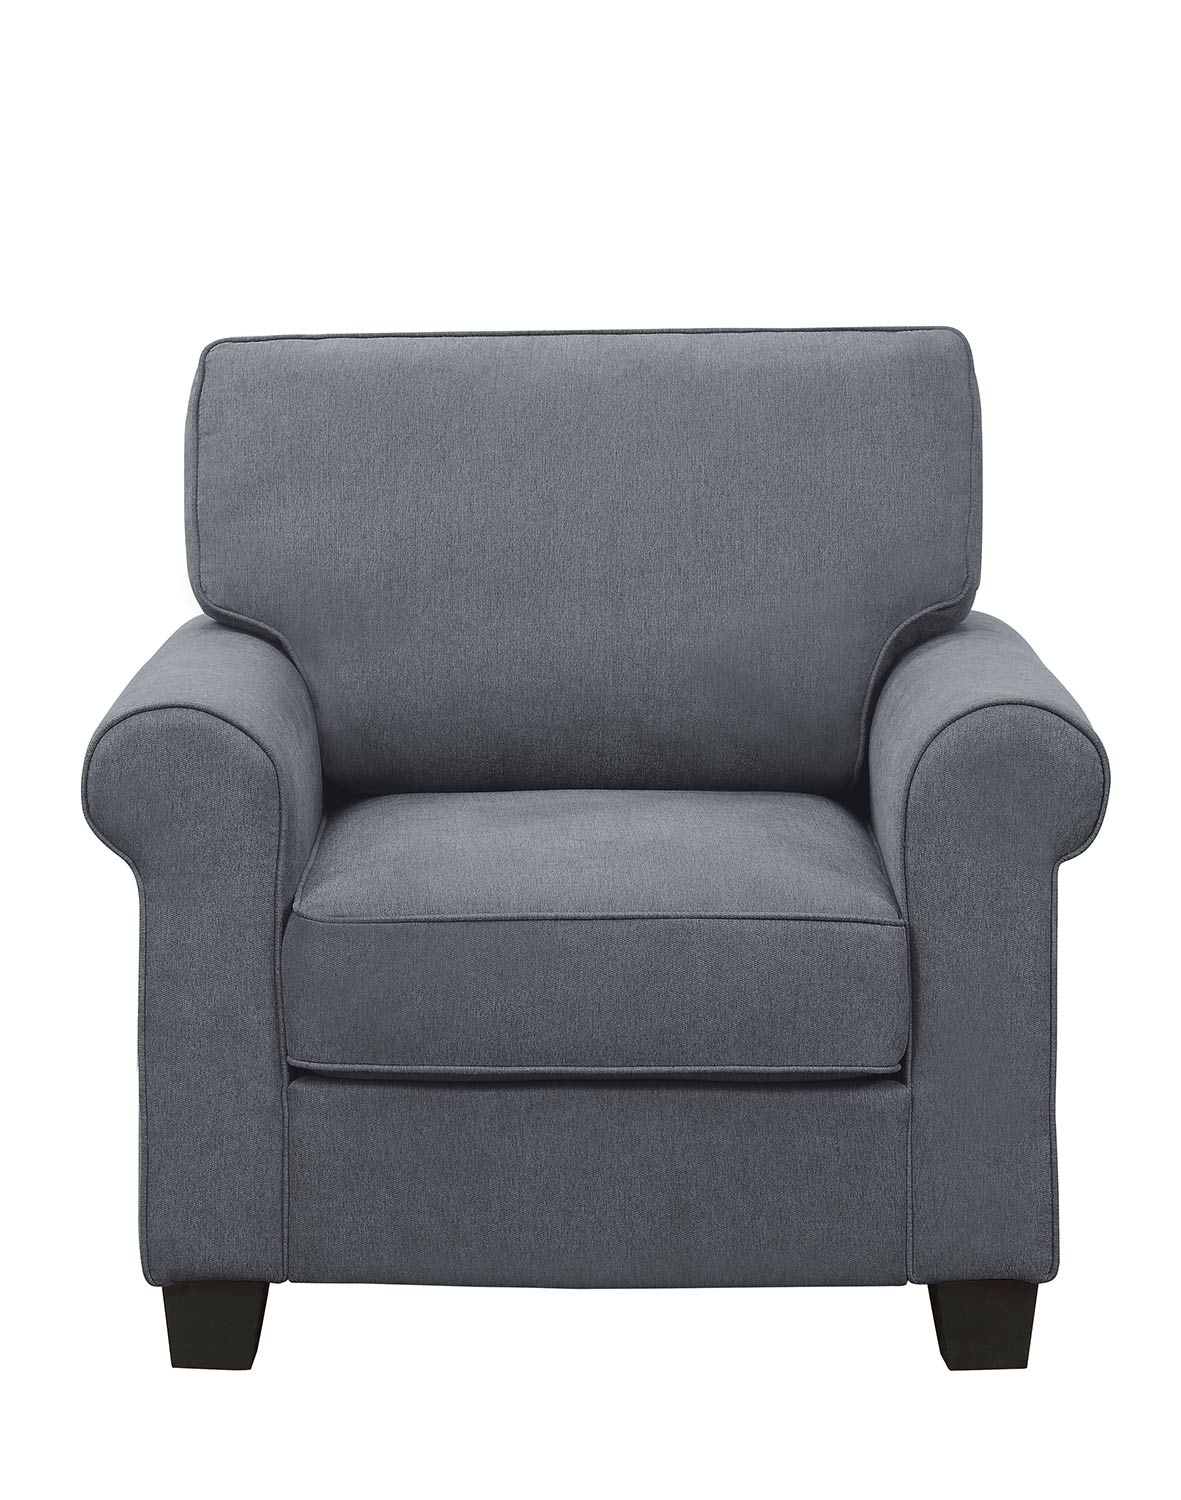 Homelegance Selkirk Chair - Gray